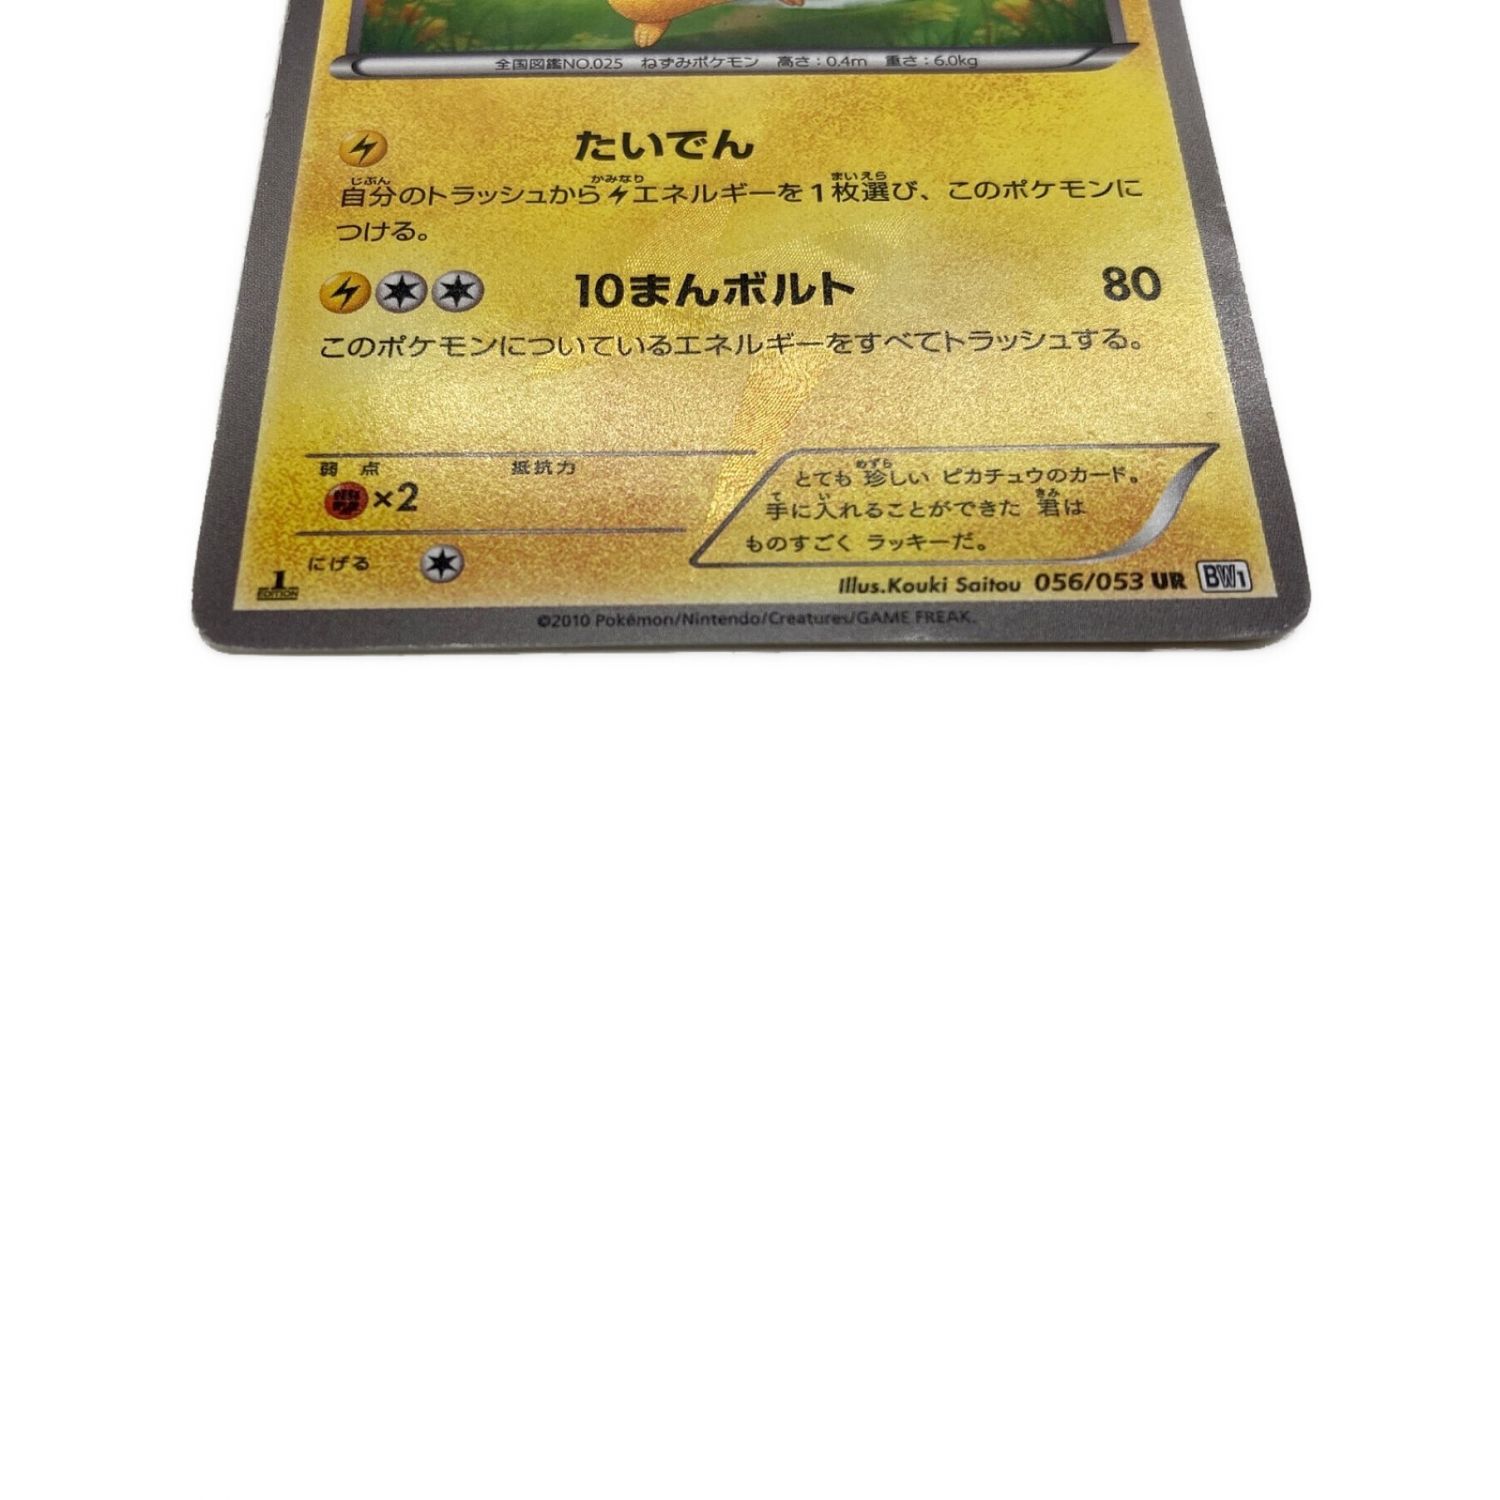 ピカチュウ UR 056 053 bw1 たいでん - ポケモンカードゲーム